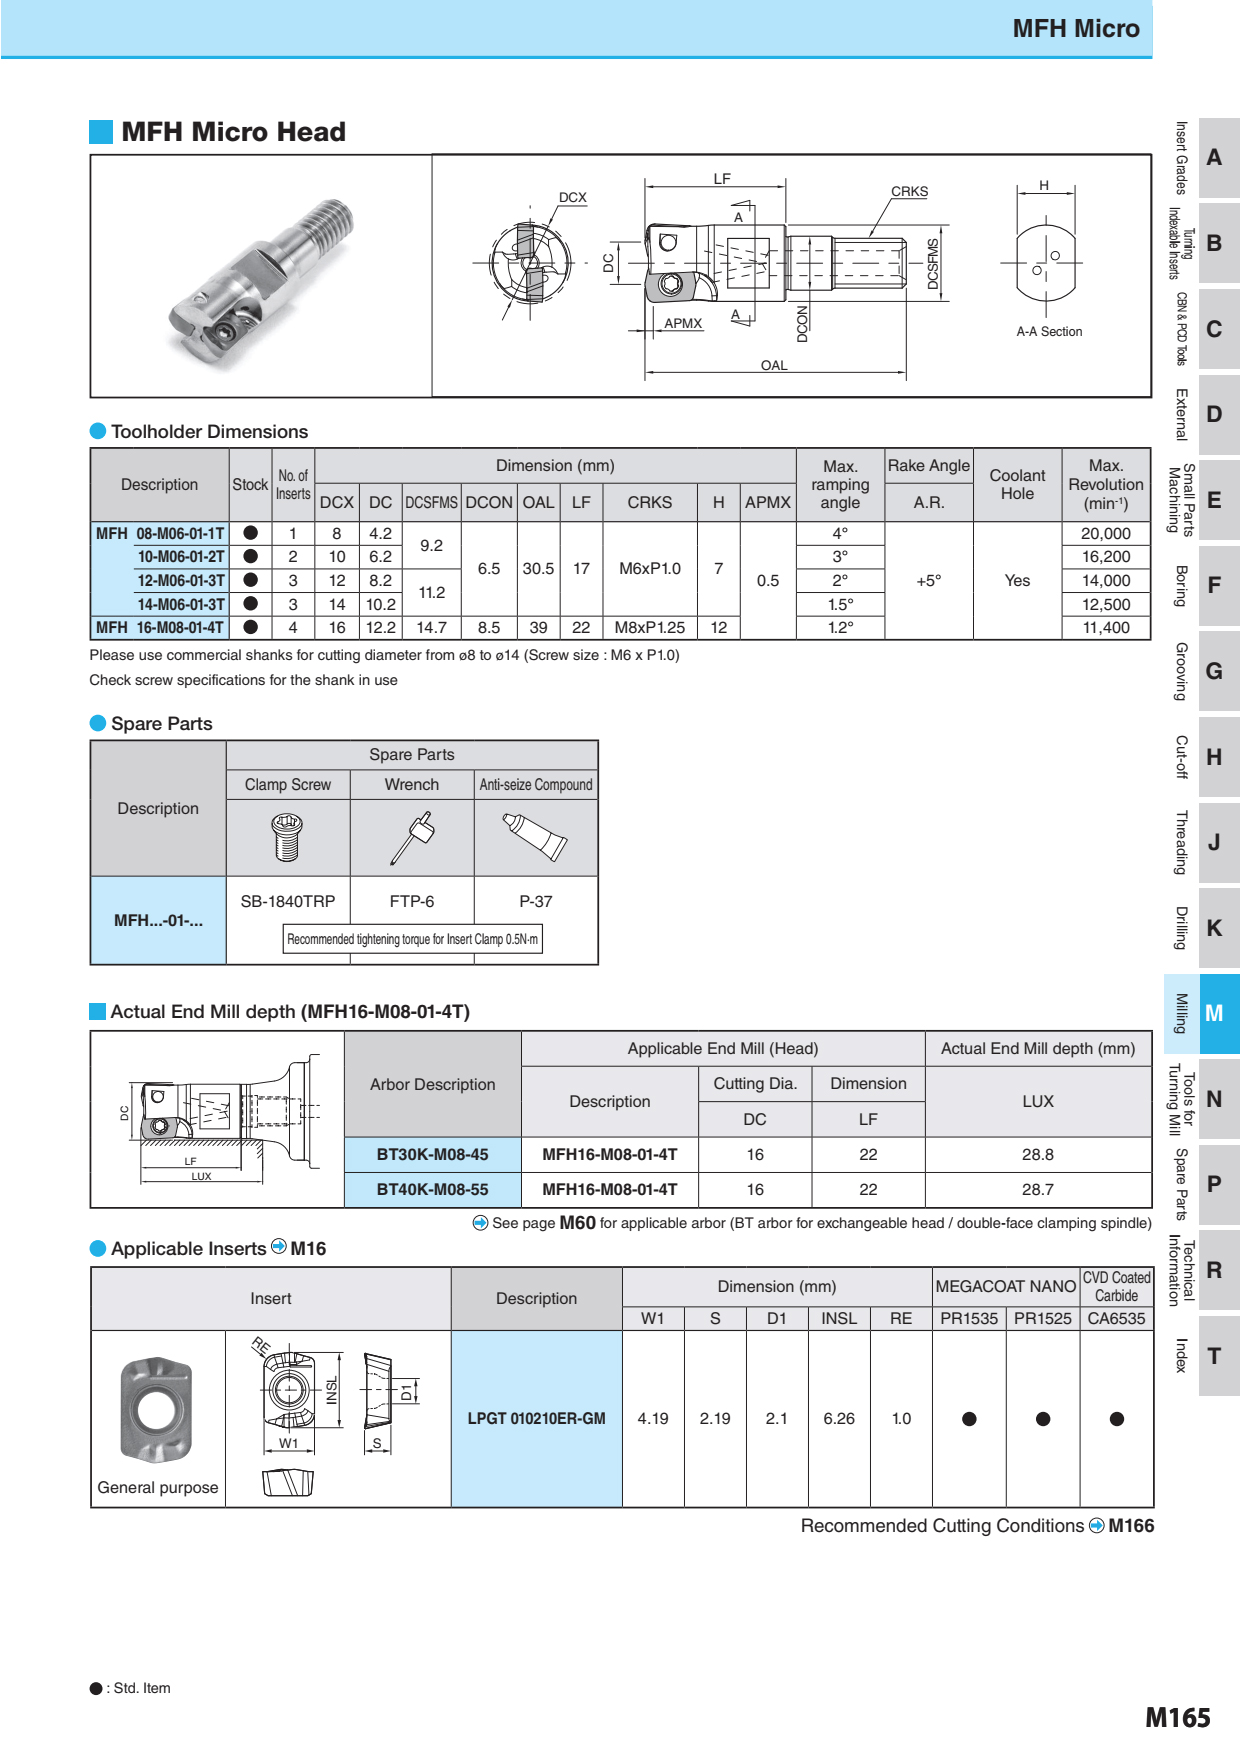 Mảnh Insert Phay Kyocera LPGT010210ER-GM Lắp Cán MFH Micro 3